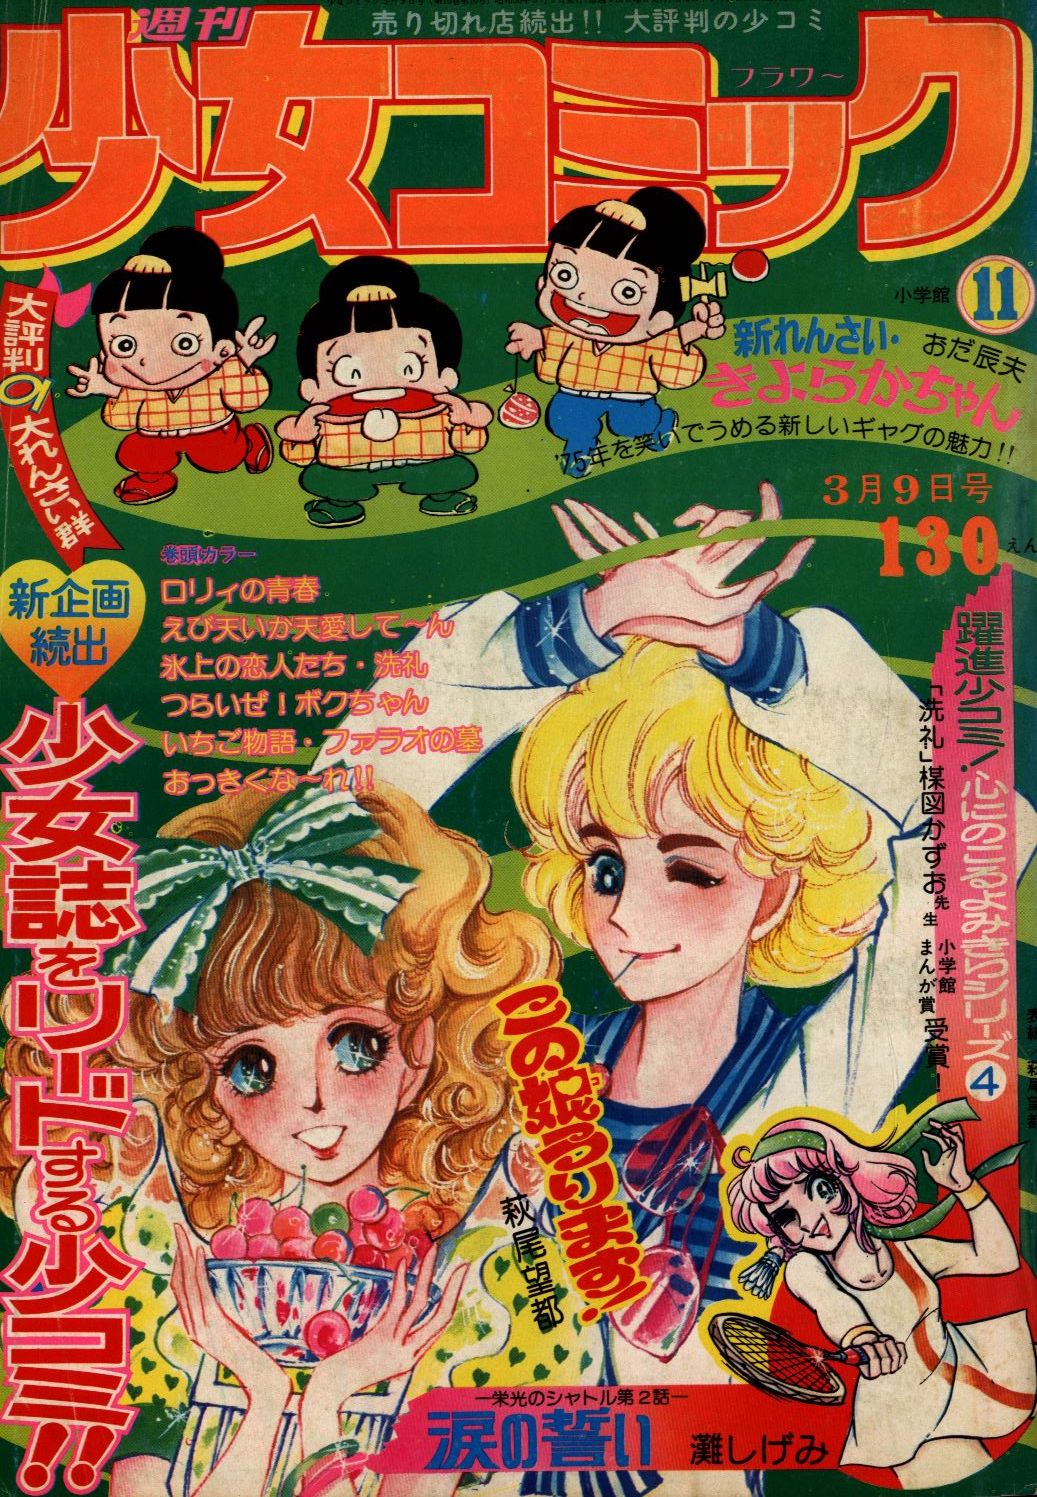 少女マンガ「りぼん」昭和50年 1975年 12冊セット マンガ 漫画 昭和 